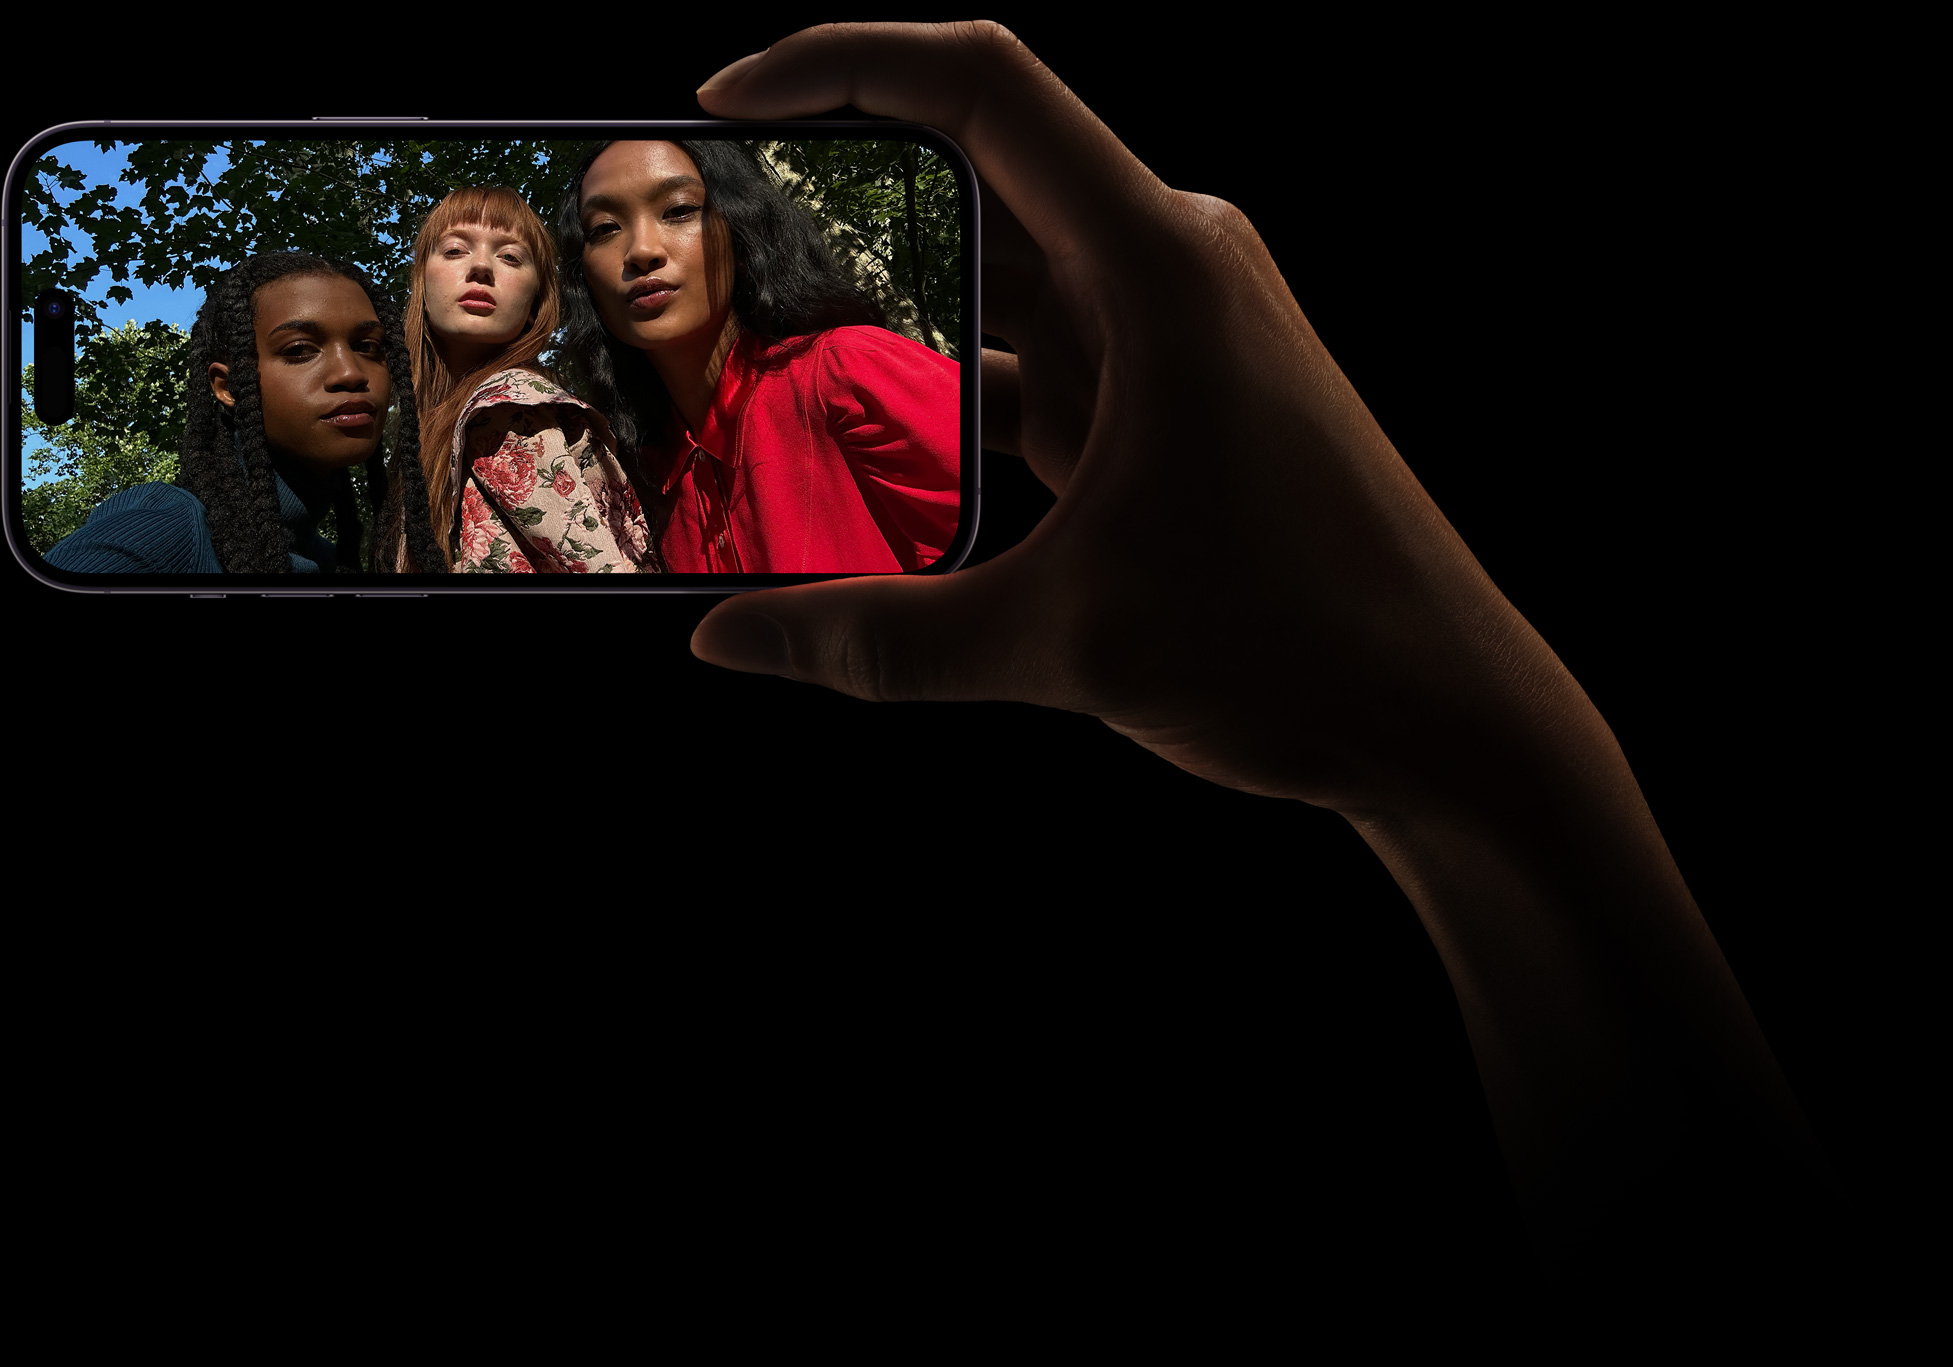 Una selfie grupal de tres mujeres posando juntas. La foto fue tomada con la cámara TrueDepth.